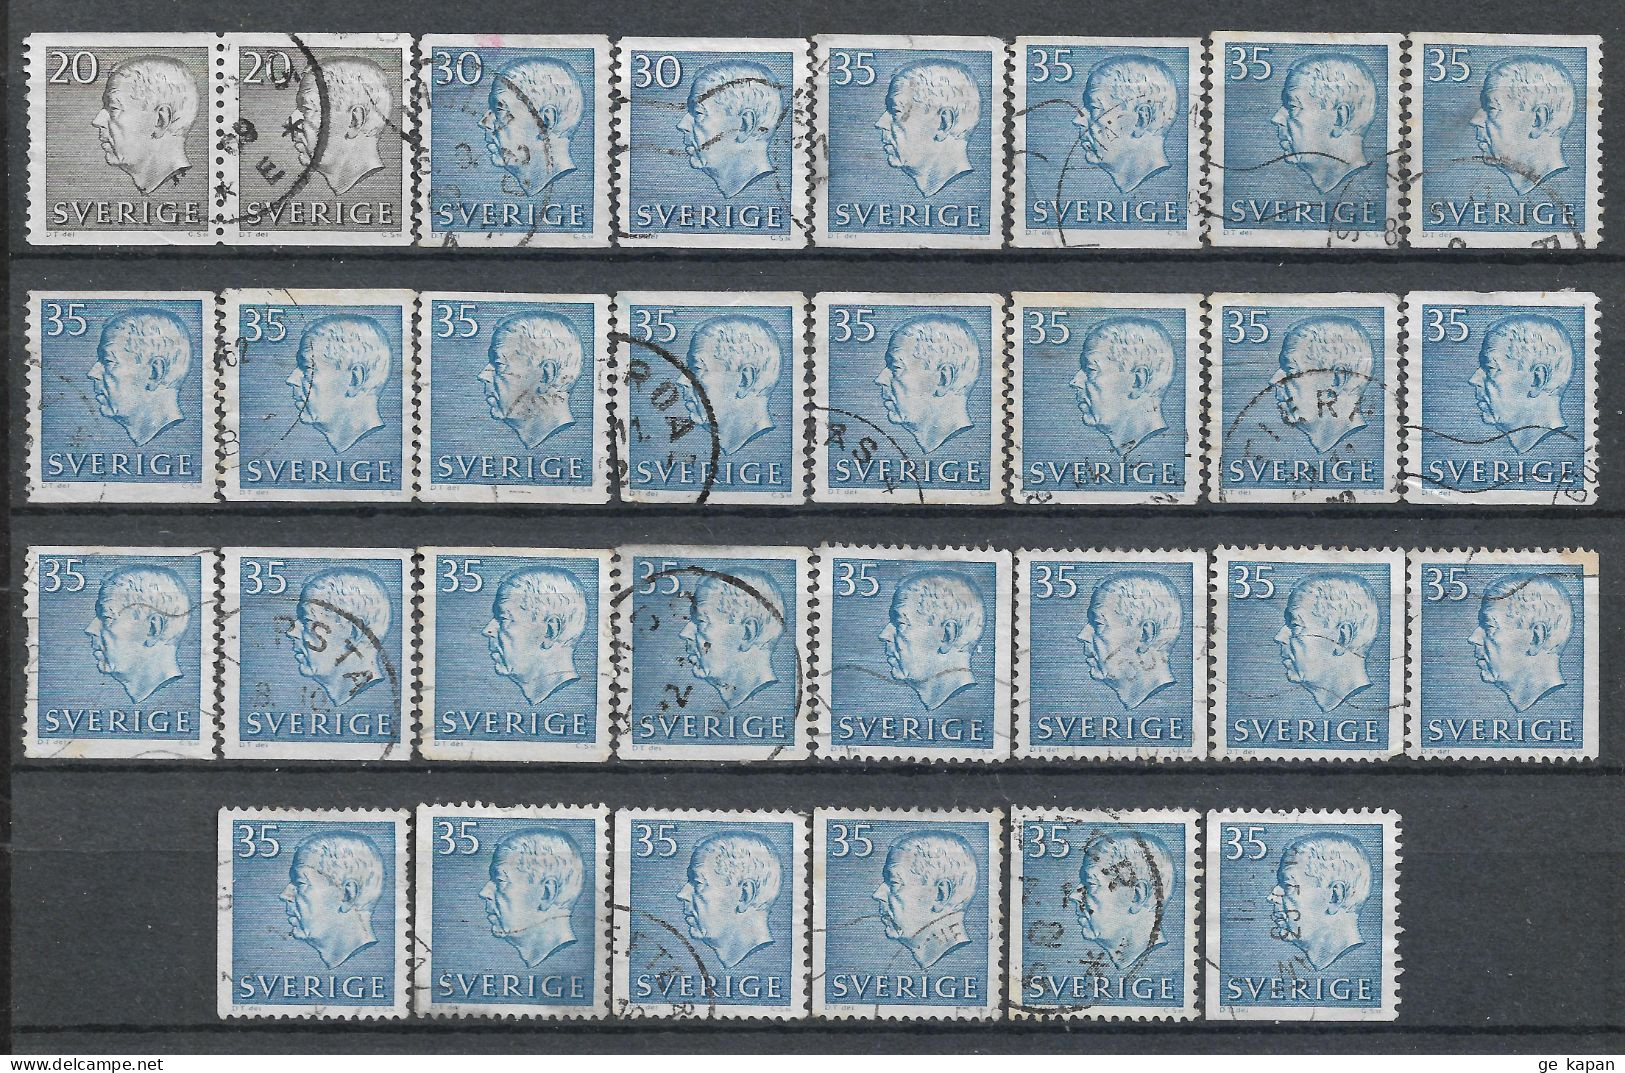 1961-1964 SWEDEN Set Of 30 Used Stamps (Scott # 572,574,577,586) CV $6.00 - Used Stamps